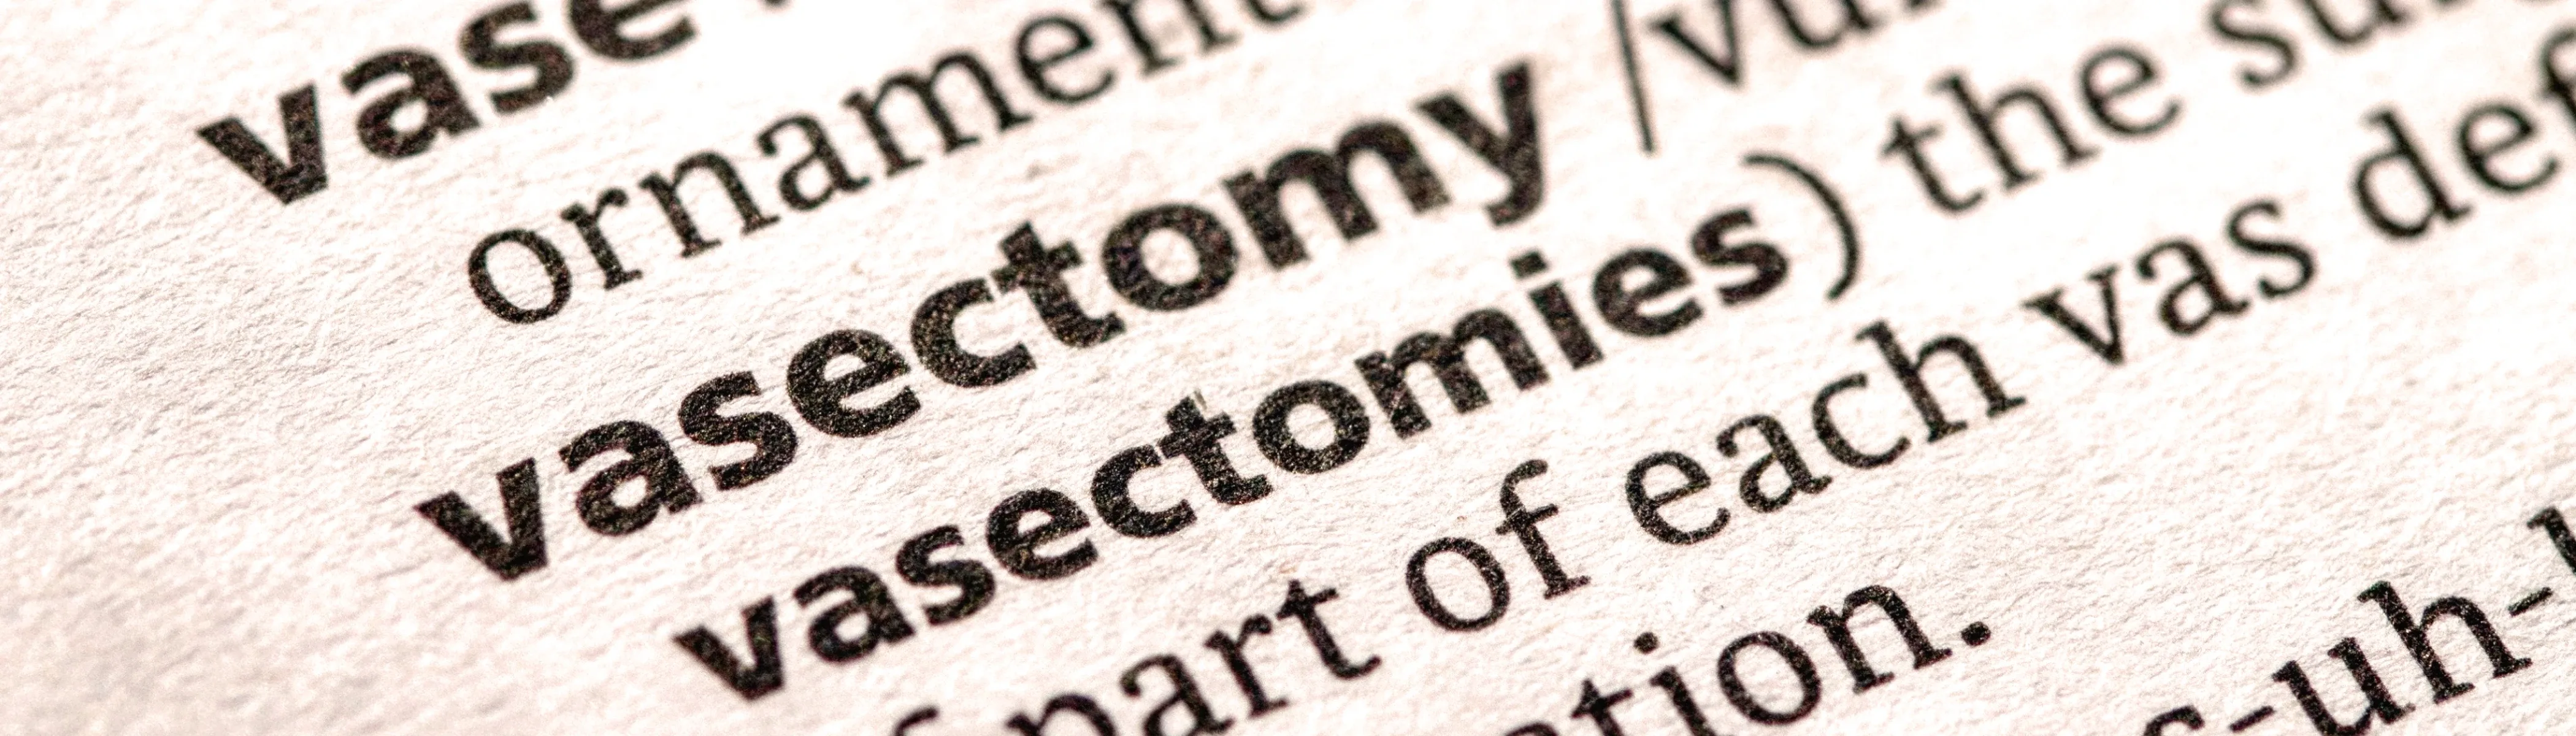 Die Vasektomie: Eine verlässliche Verhütungsmethode